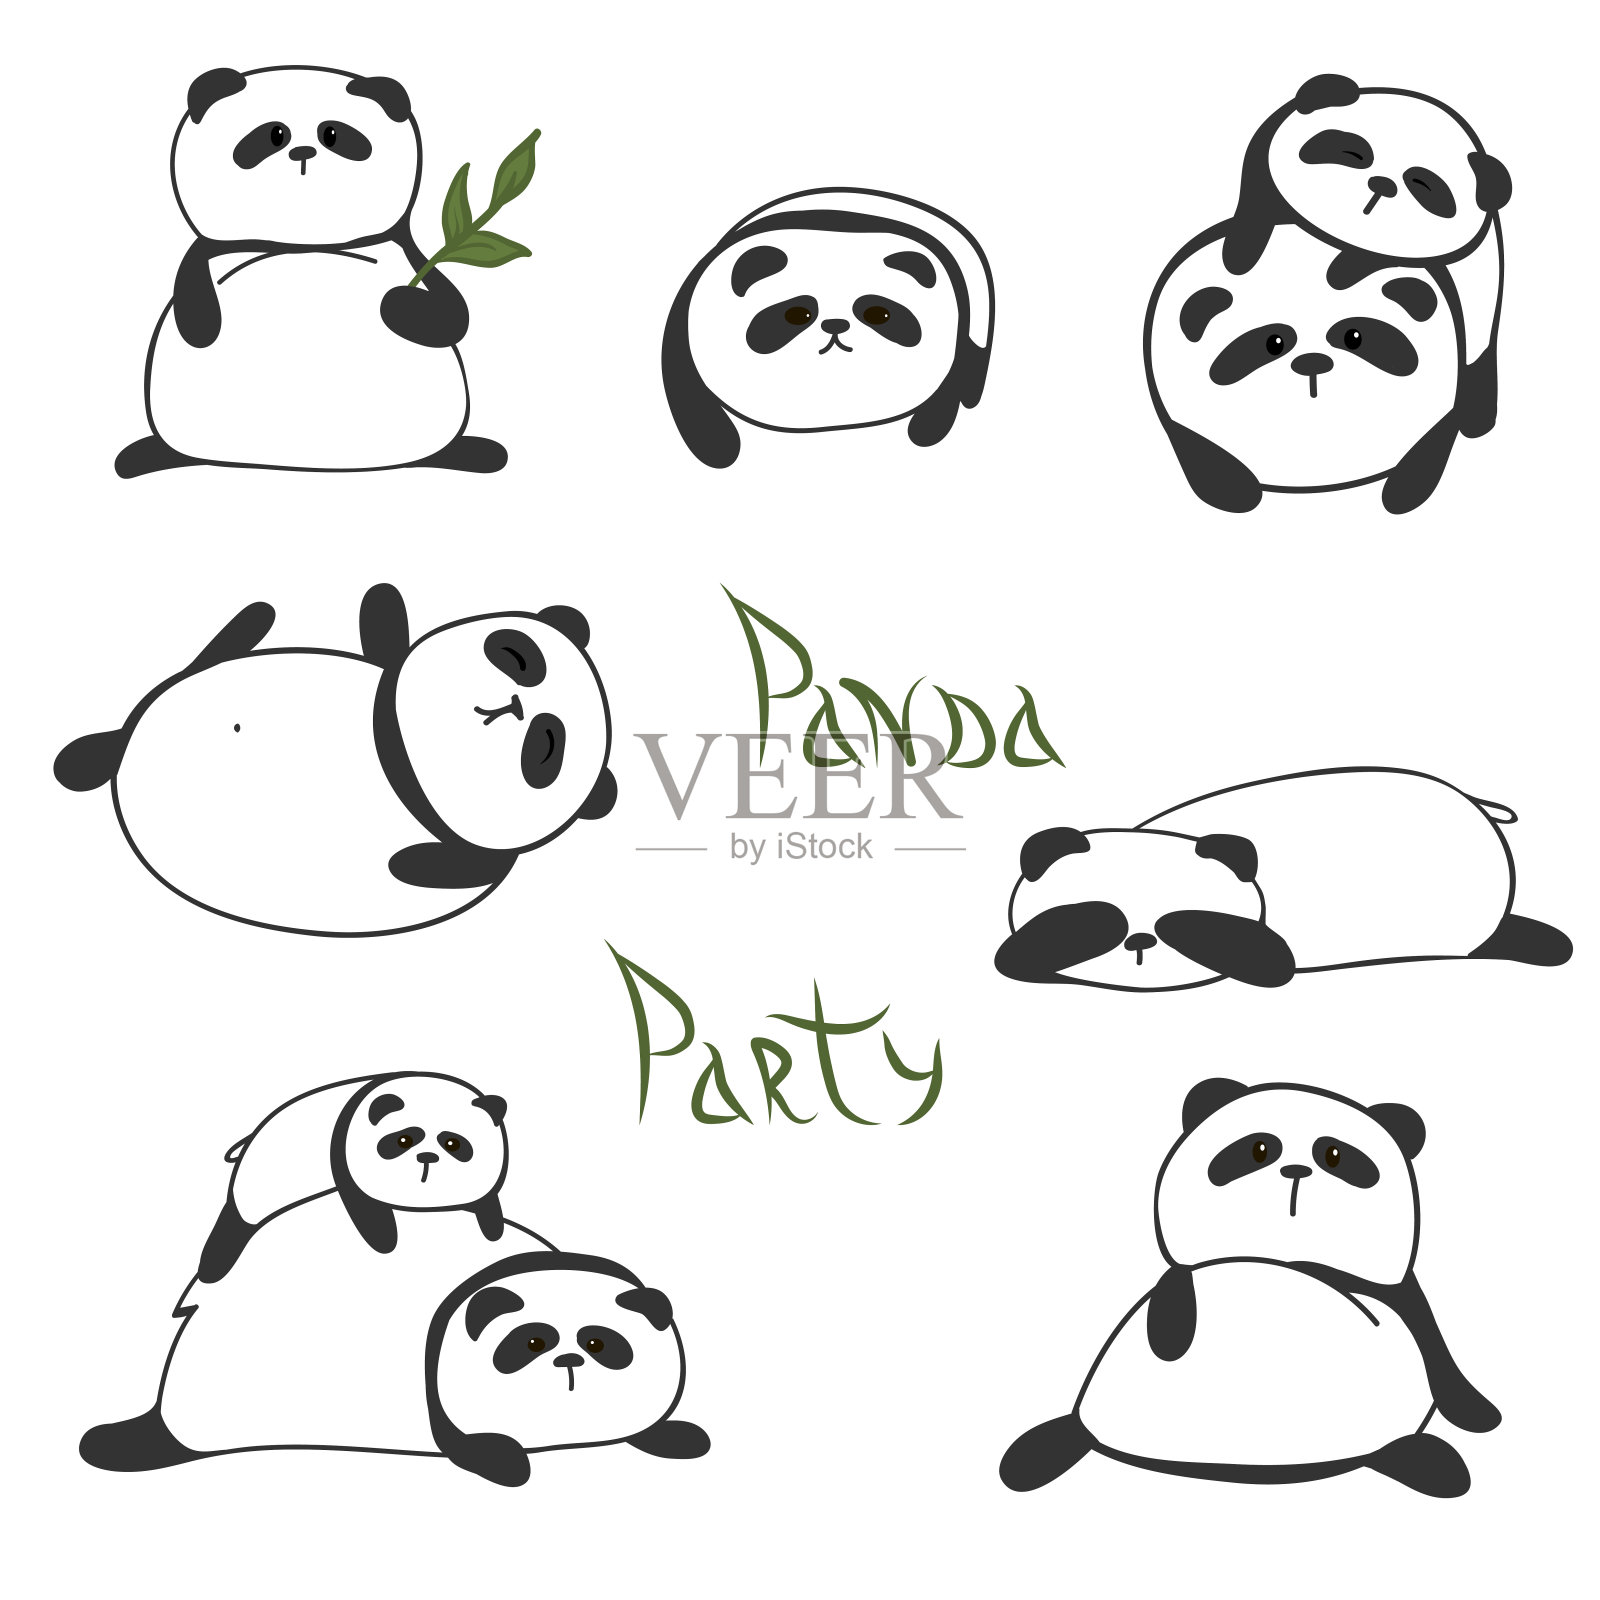 一组有趣可爱的熊猫插画图片素材